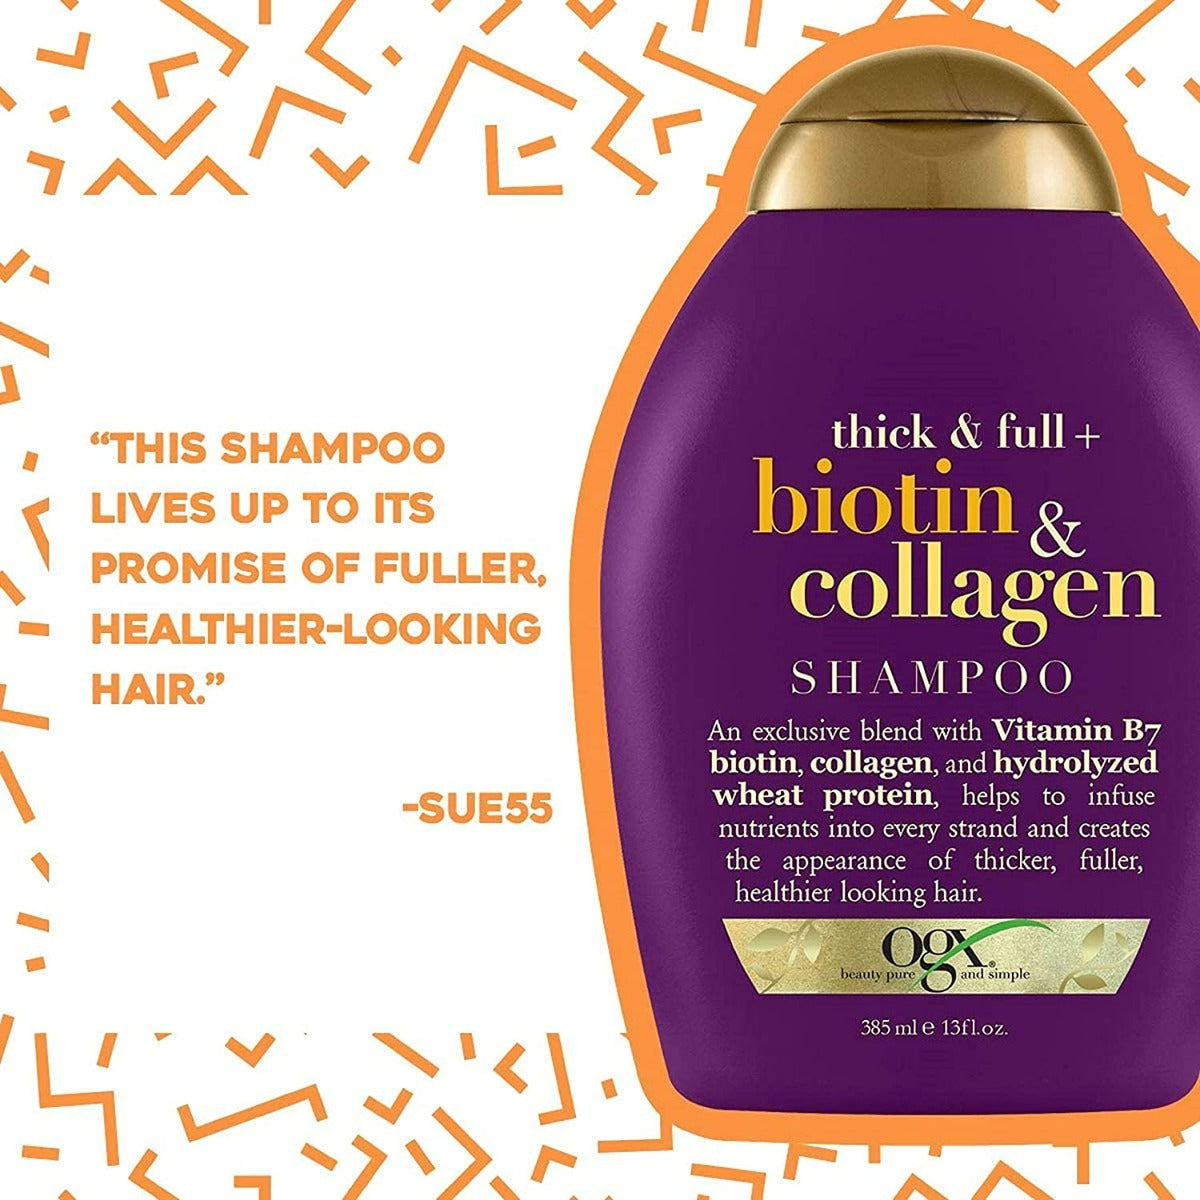 OGX Biotin and Collagen Shampoo (385ml)